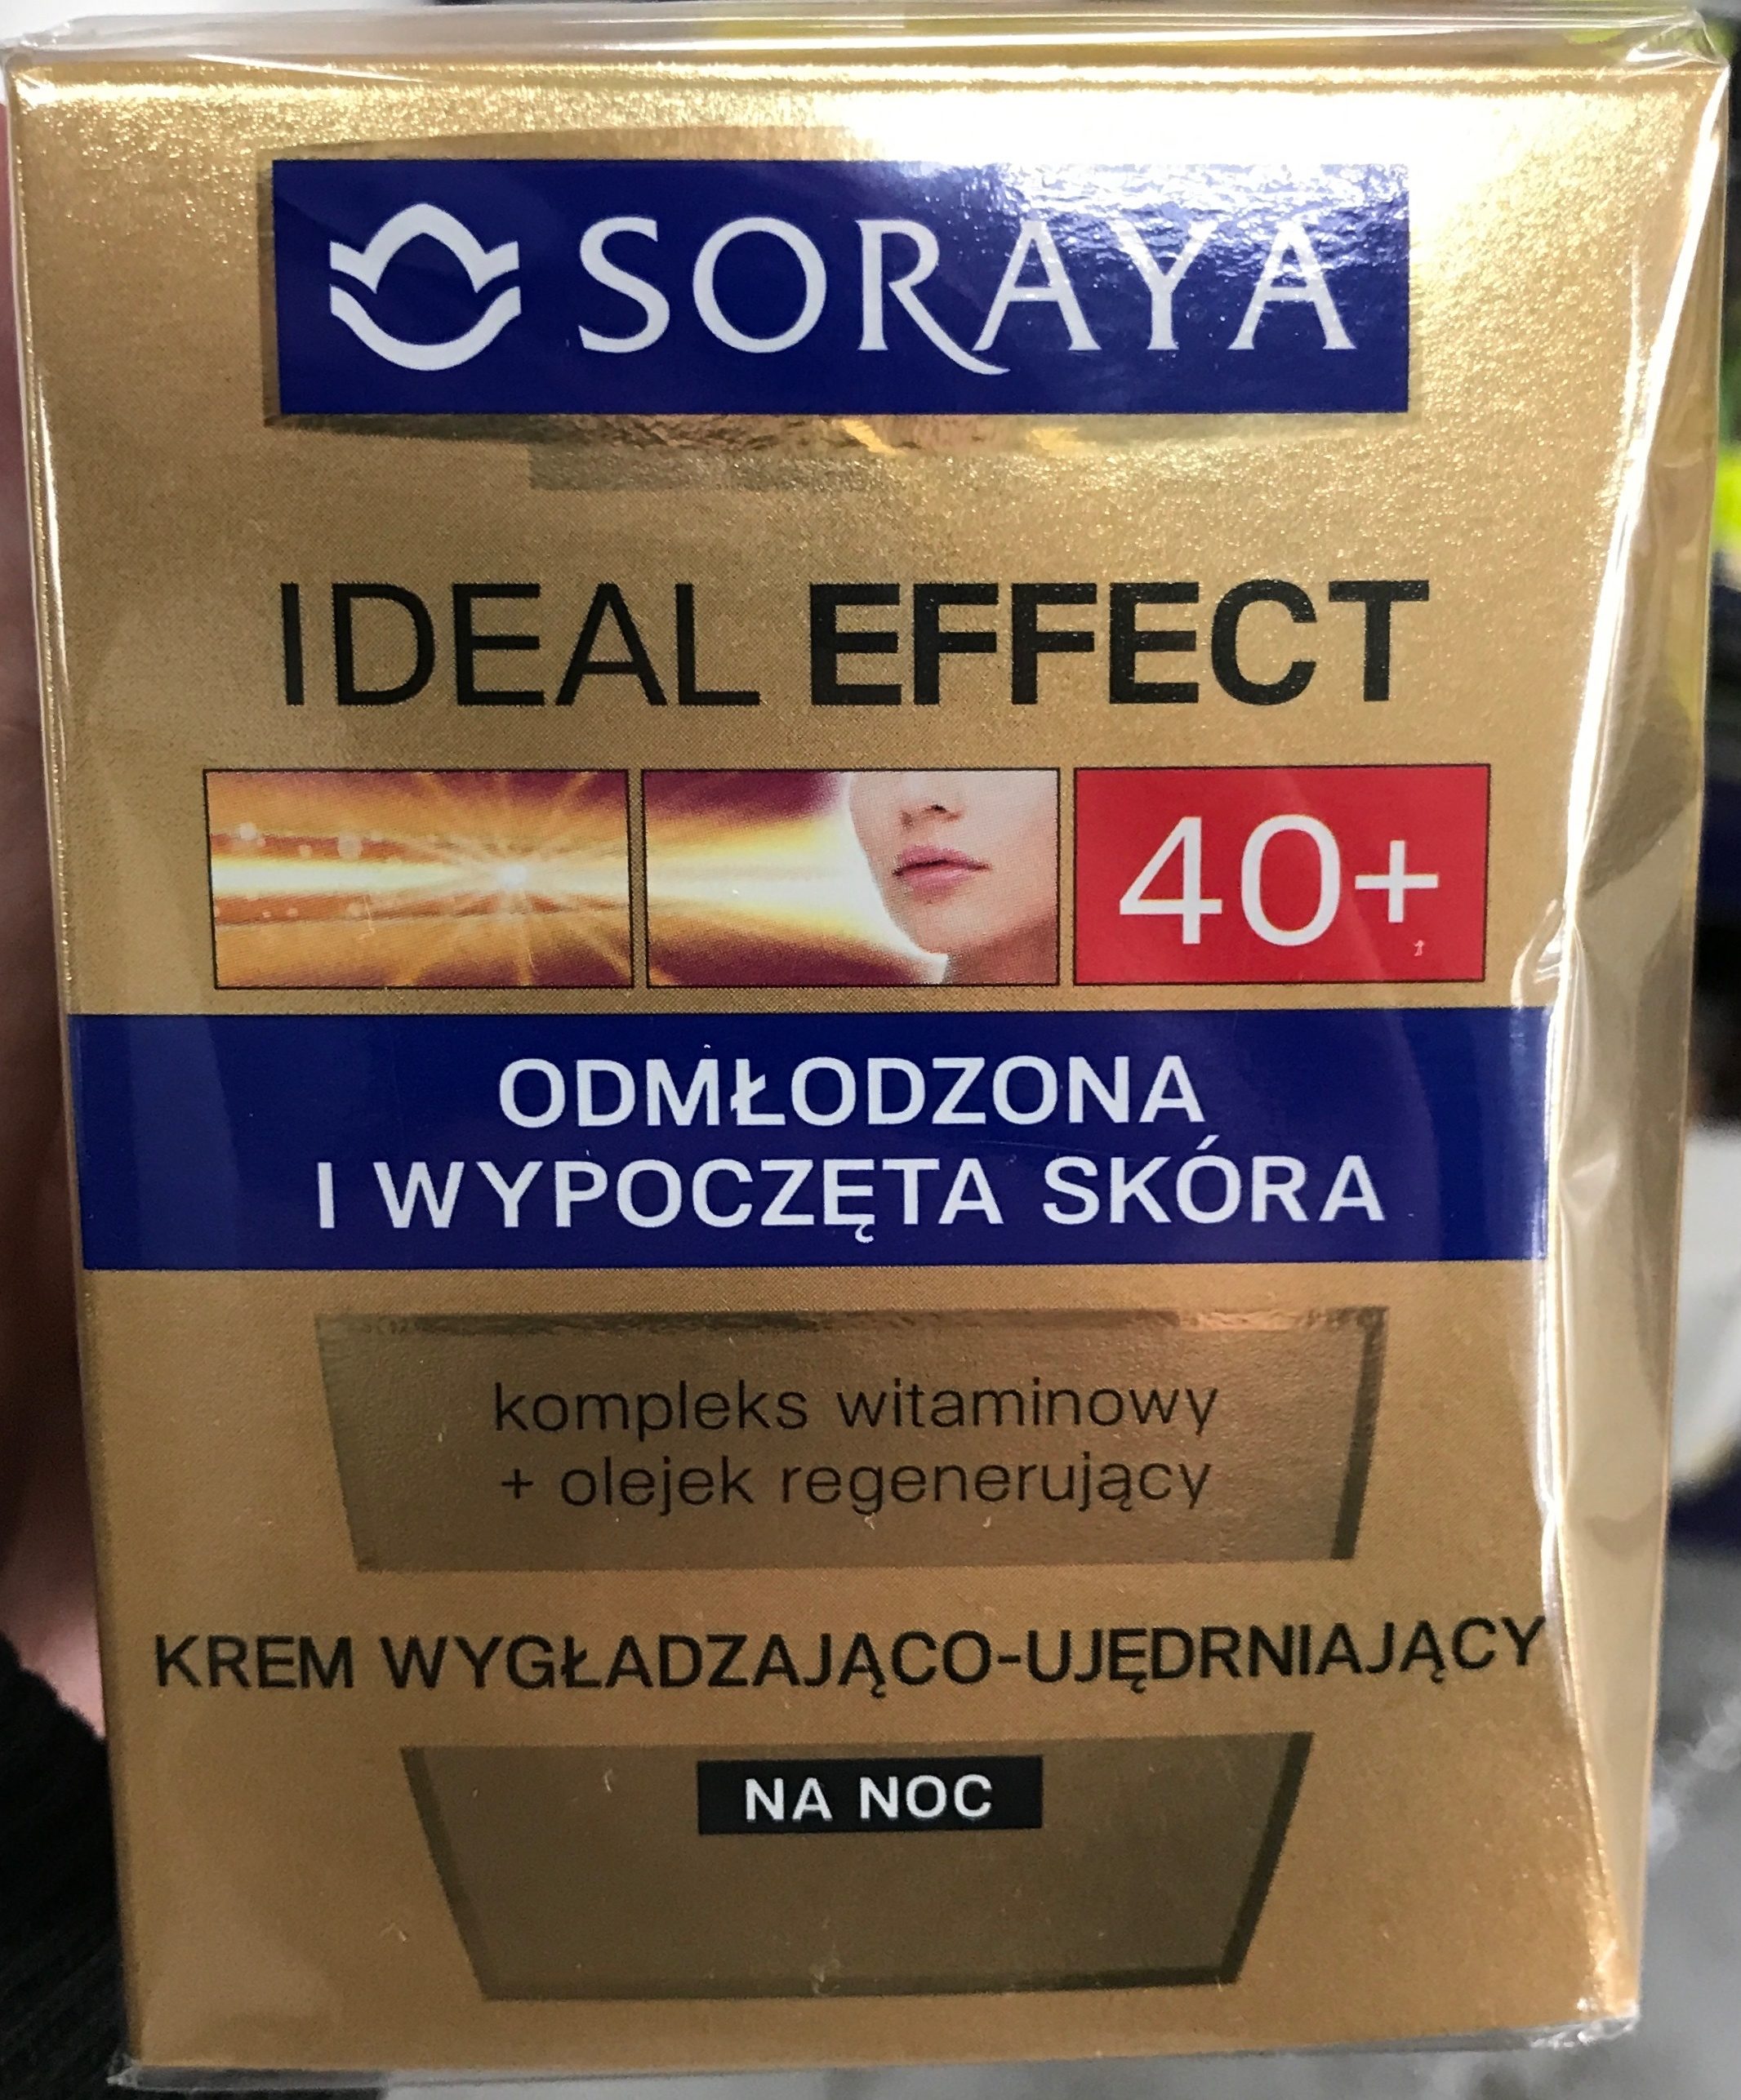 Ideal Effect 40+ Krem wygładzająco-ujędrniający - Produit - pl